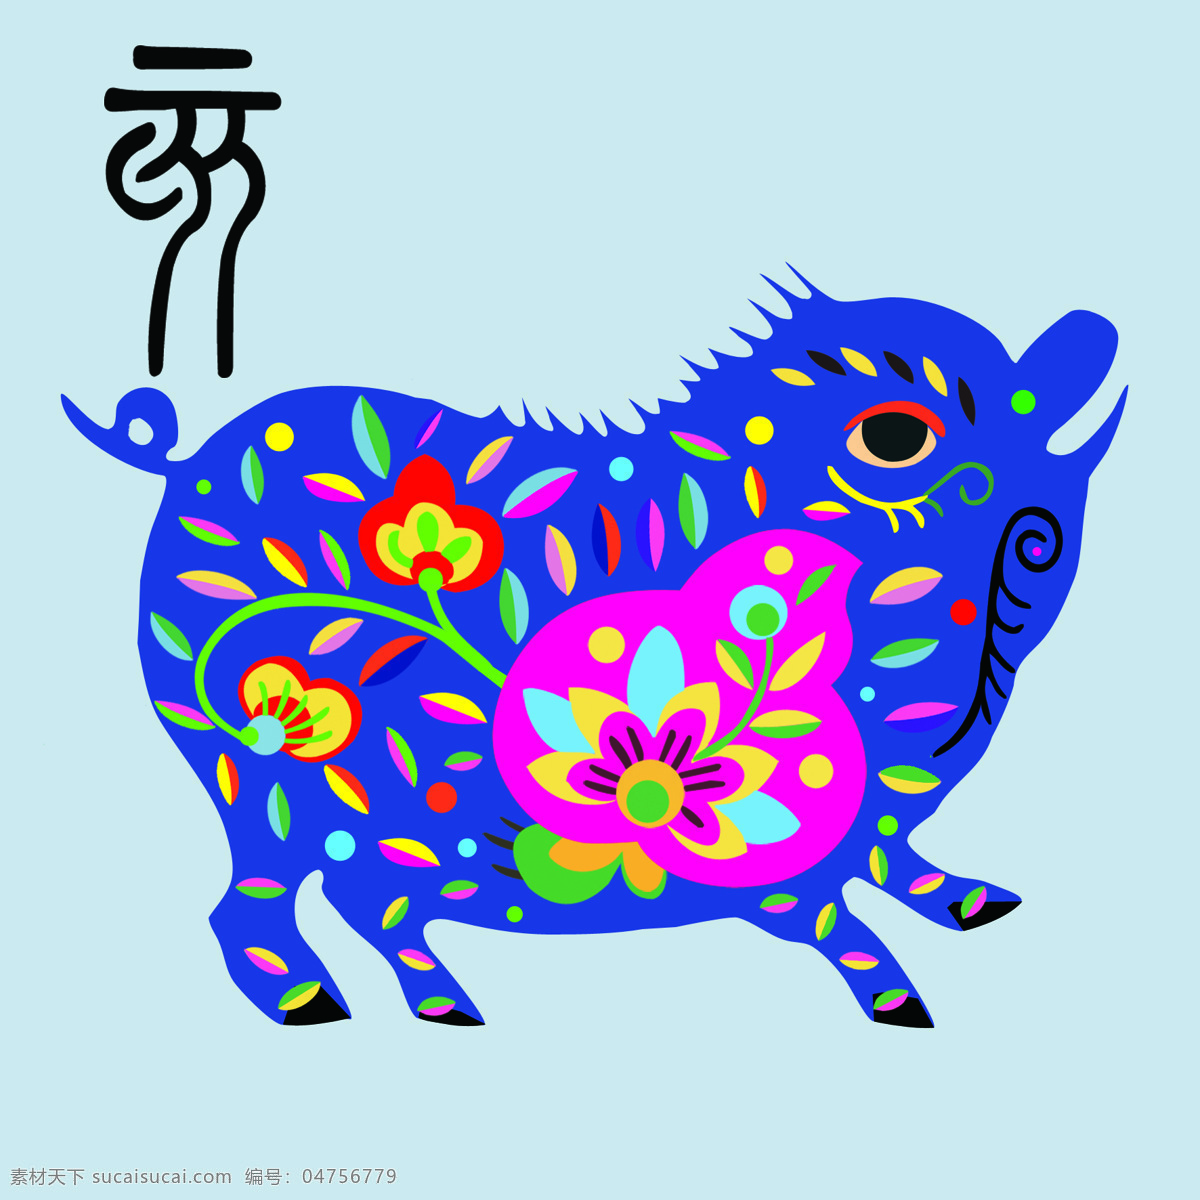 十二生肖 猪 小猪 传统 剪纸 贴画 传统文化 文化艺术